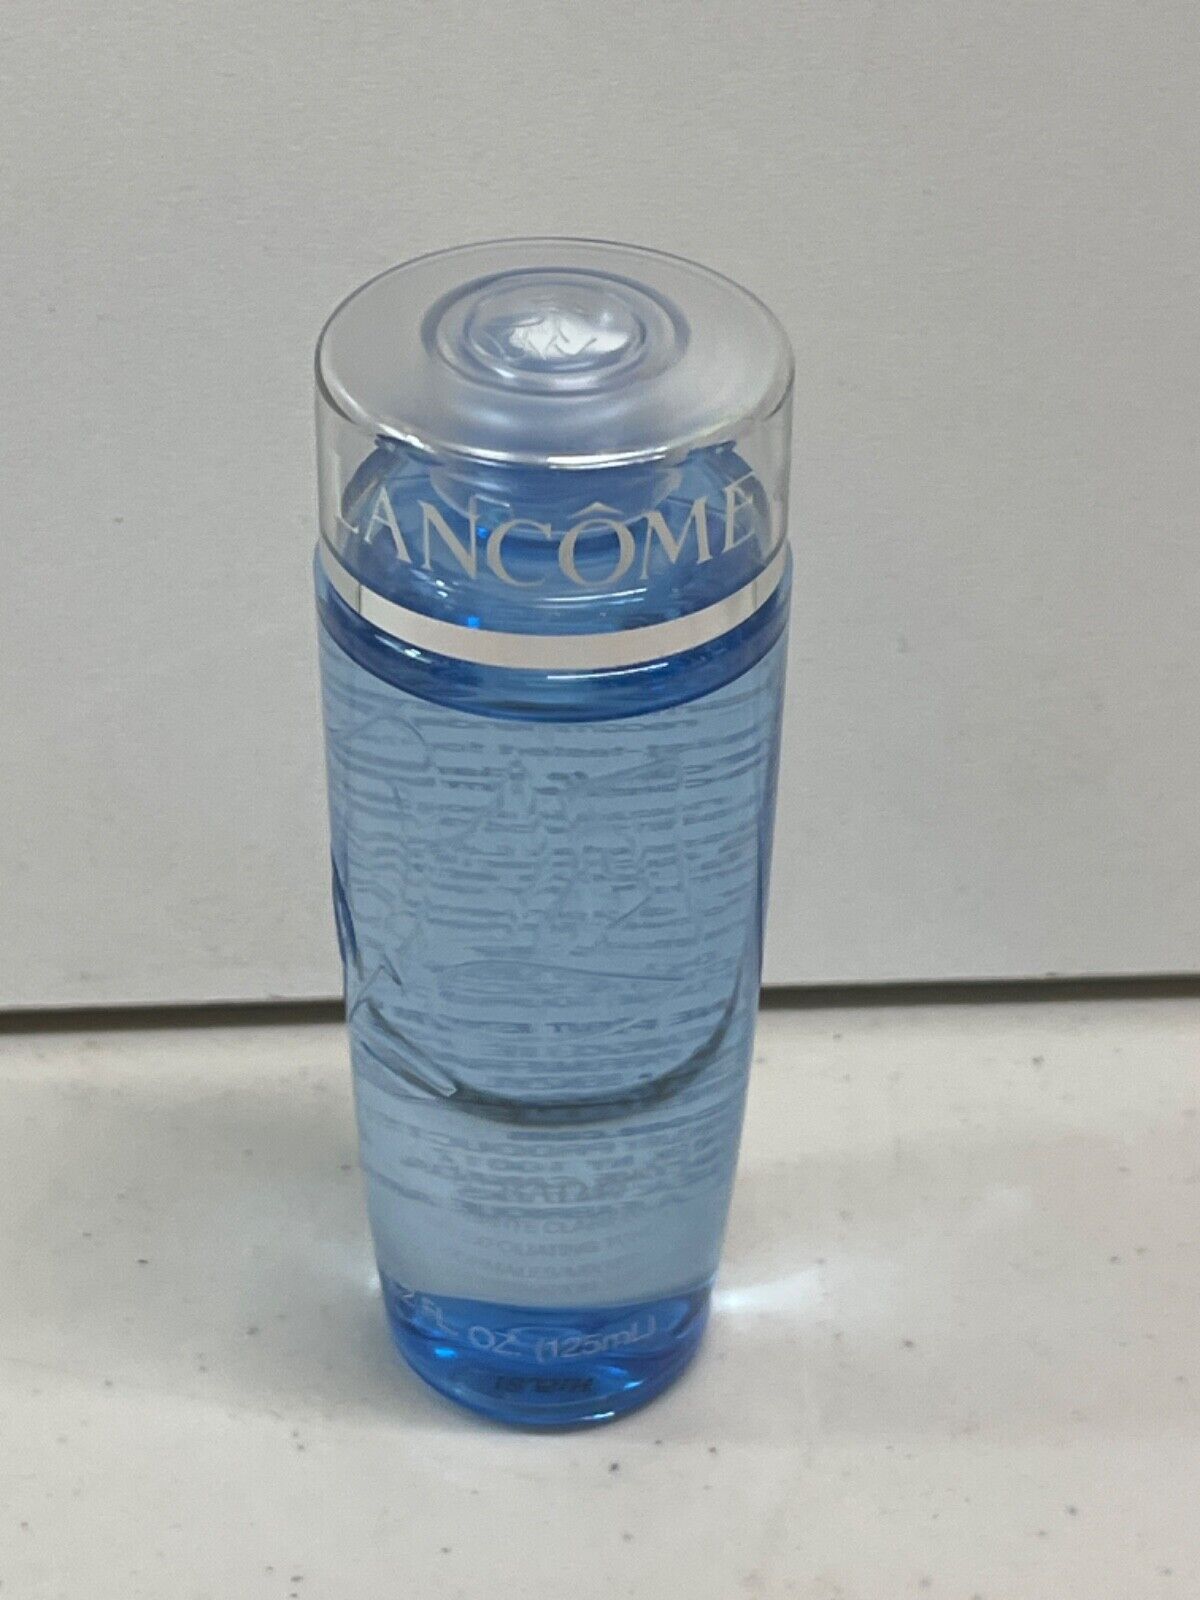 Lancome Tonique RADIANCE Clarifying Refining Toner 4.2 oz/125 ml